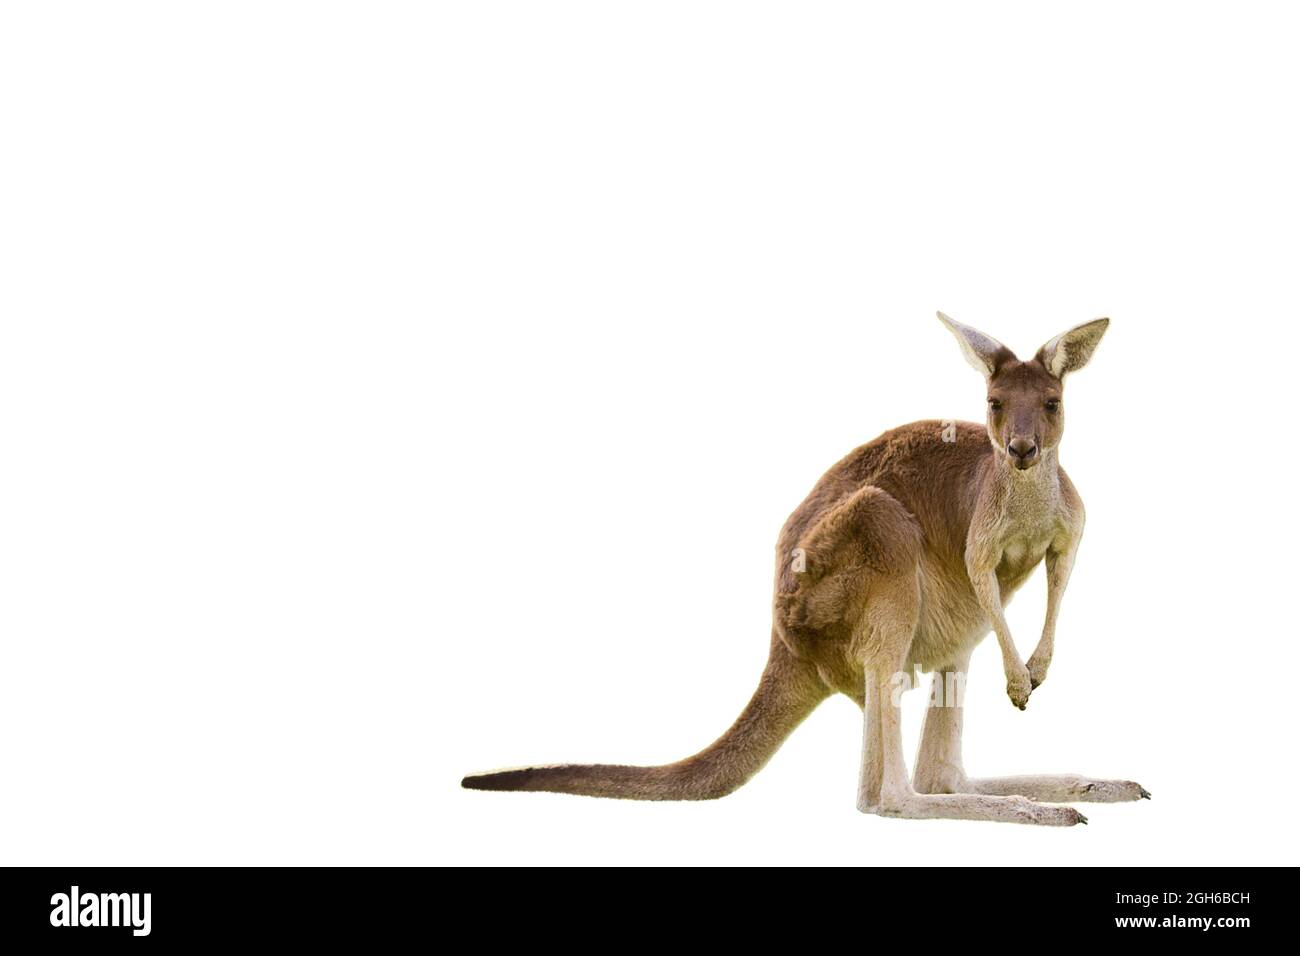 Magnifique kangourou en position d'alerte SUR FOND BLANC AVEC ESPACE DE COPIE isolé, blanc, Perth, Australie occidentale, Australie Banque D'Images